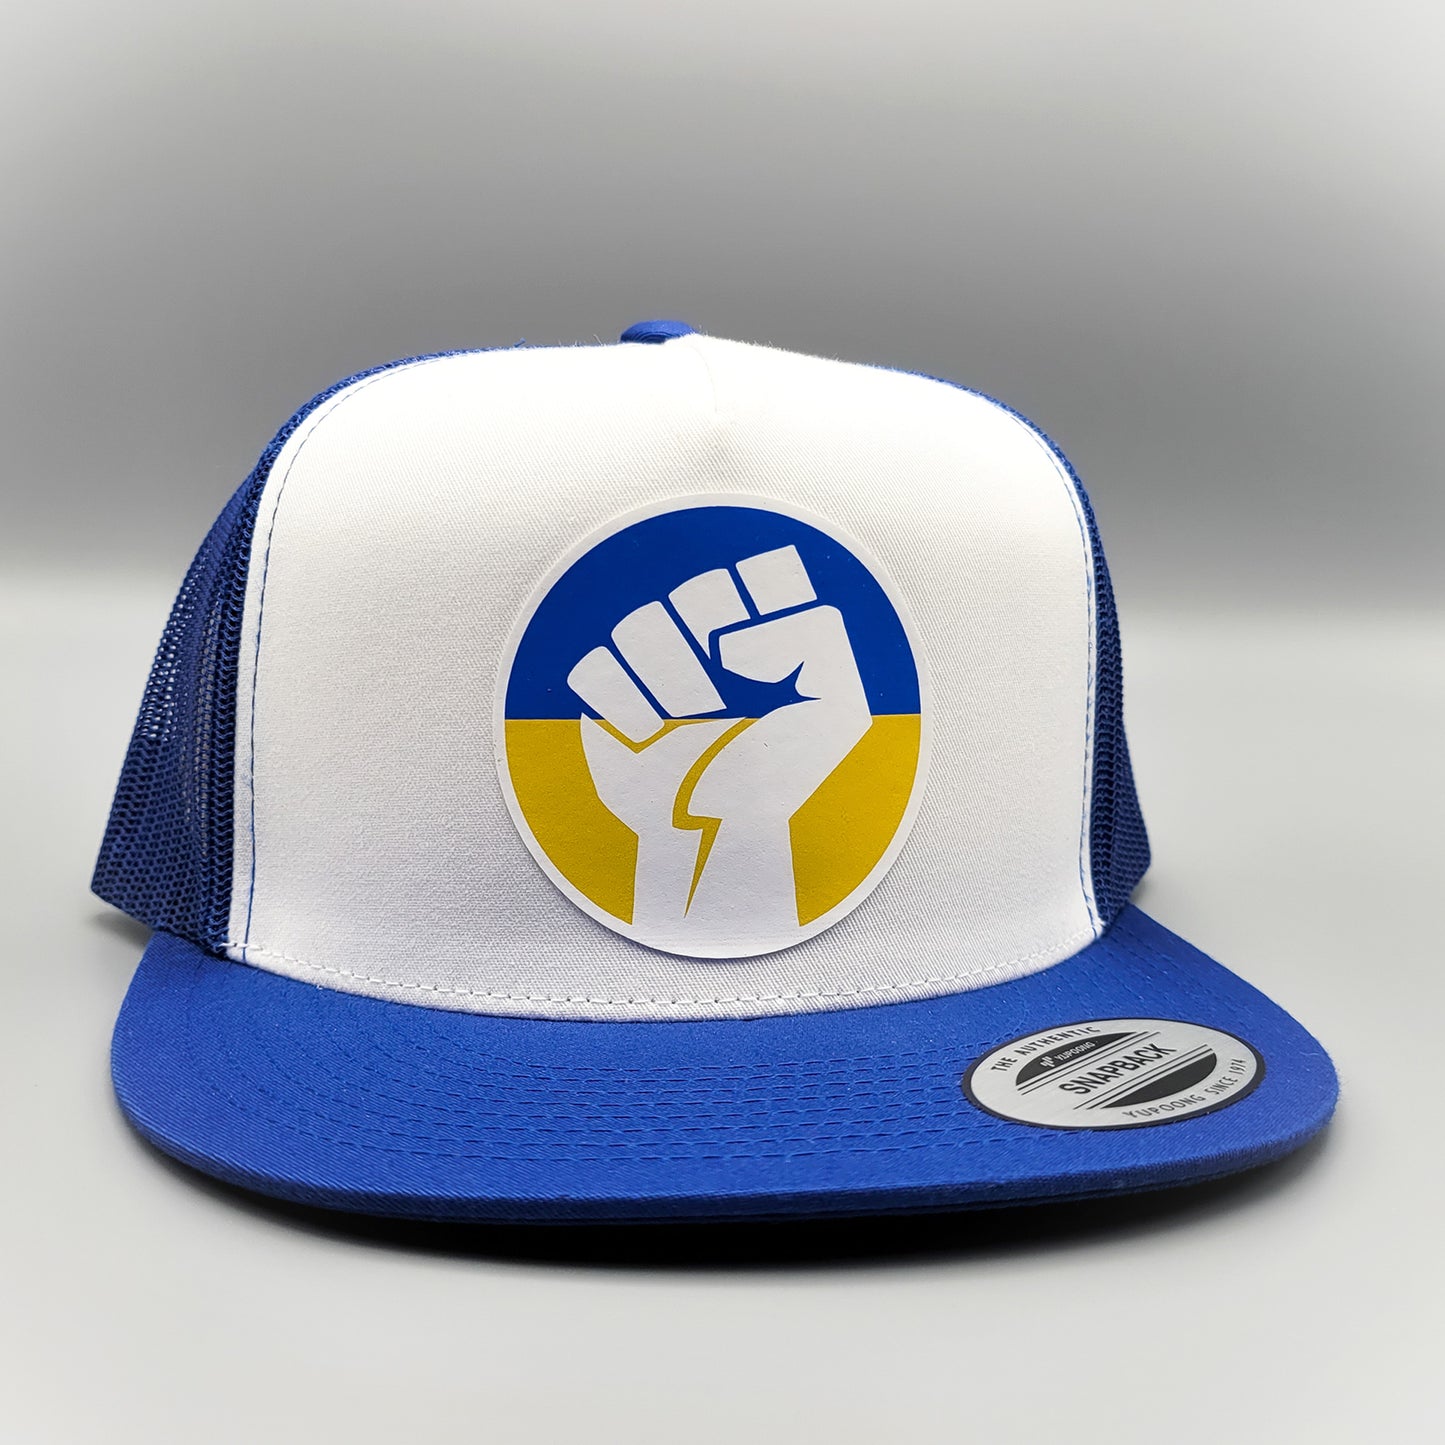 Stand with Ukraine Anti-Putin Russia Trucker Hat